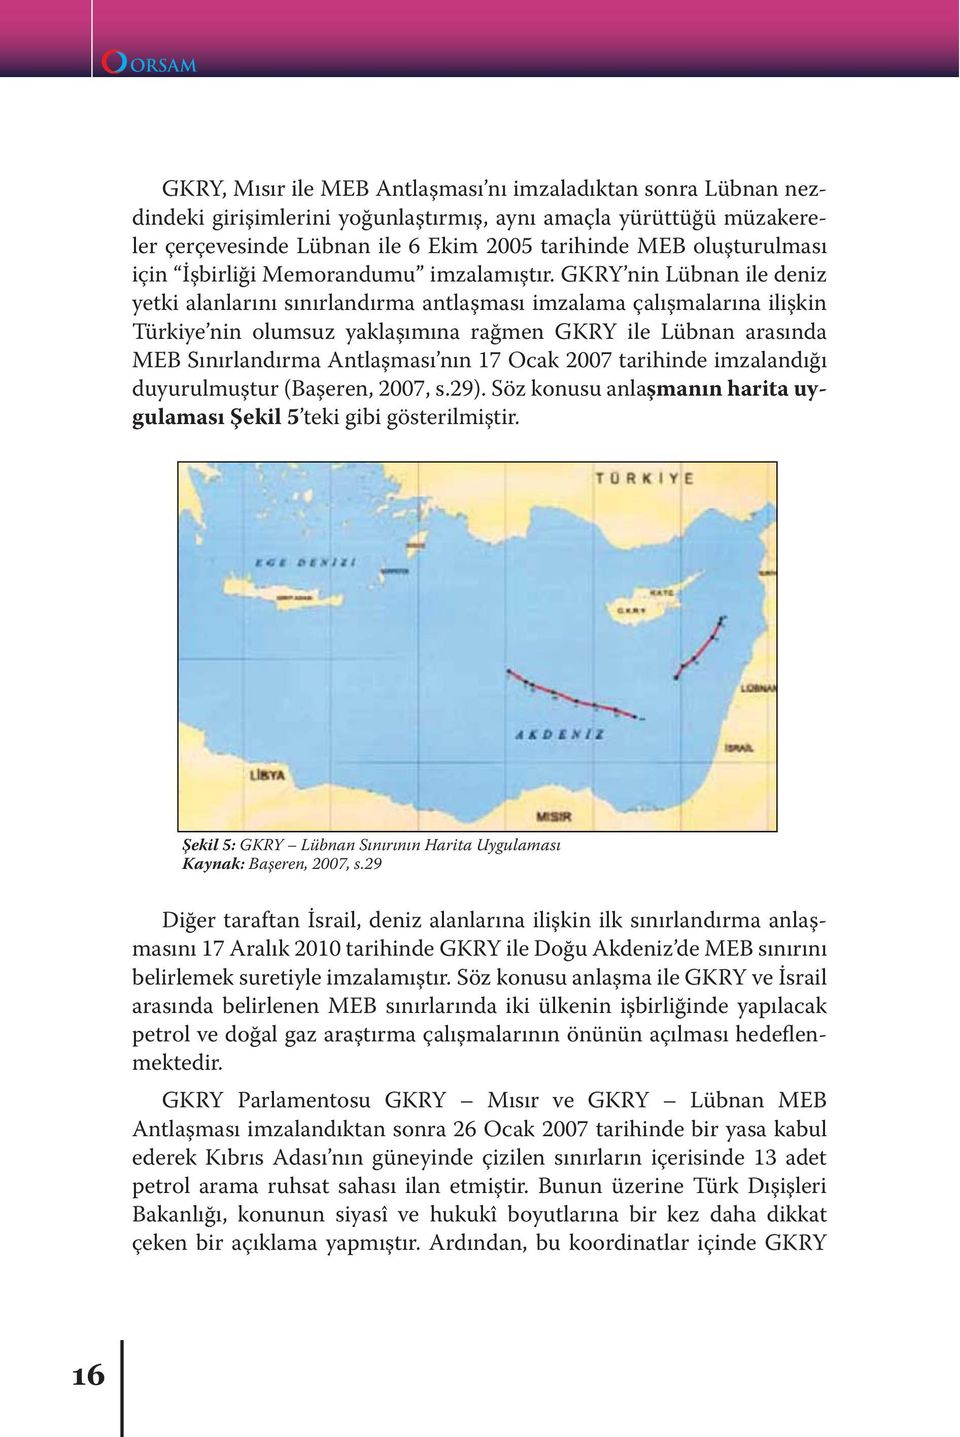 GKRY nin Lübnan ile deniz yetki alanlarını sınırlandırma antlaşması imzalama çalışmalarına ilişkin Türkiye nin olumsuz yaklaşımına rağmen GKRY ile Lübnan arasında MEB Sınırlandırma Antlaşması nın 17